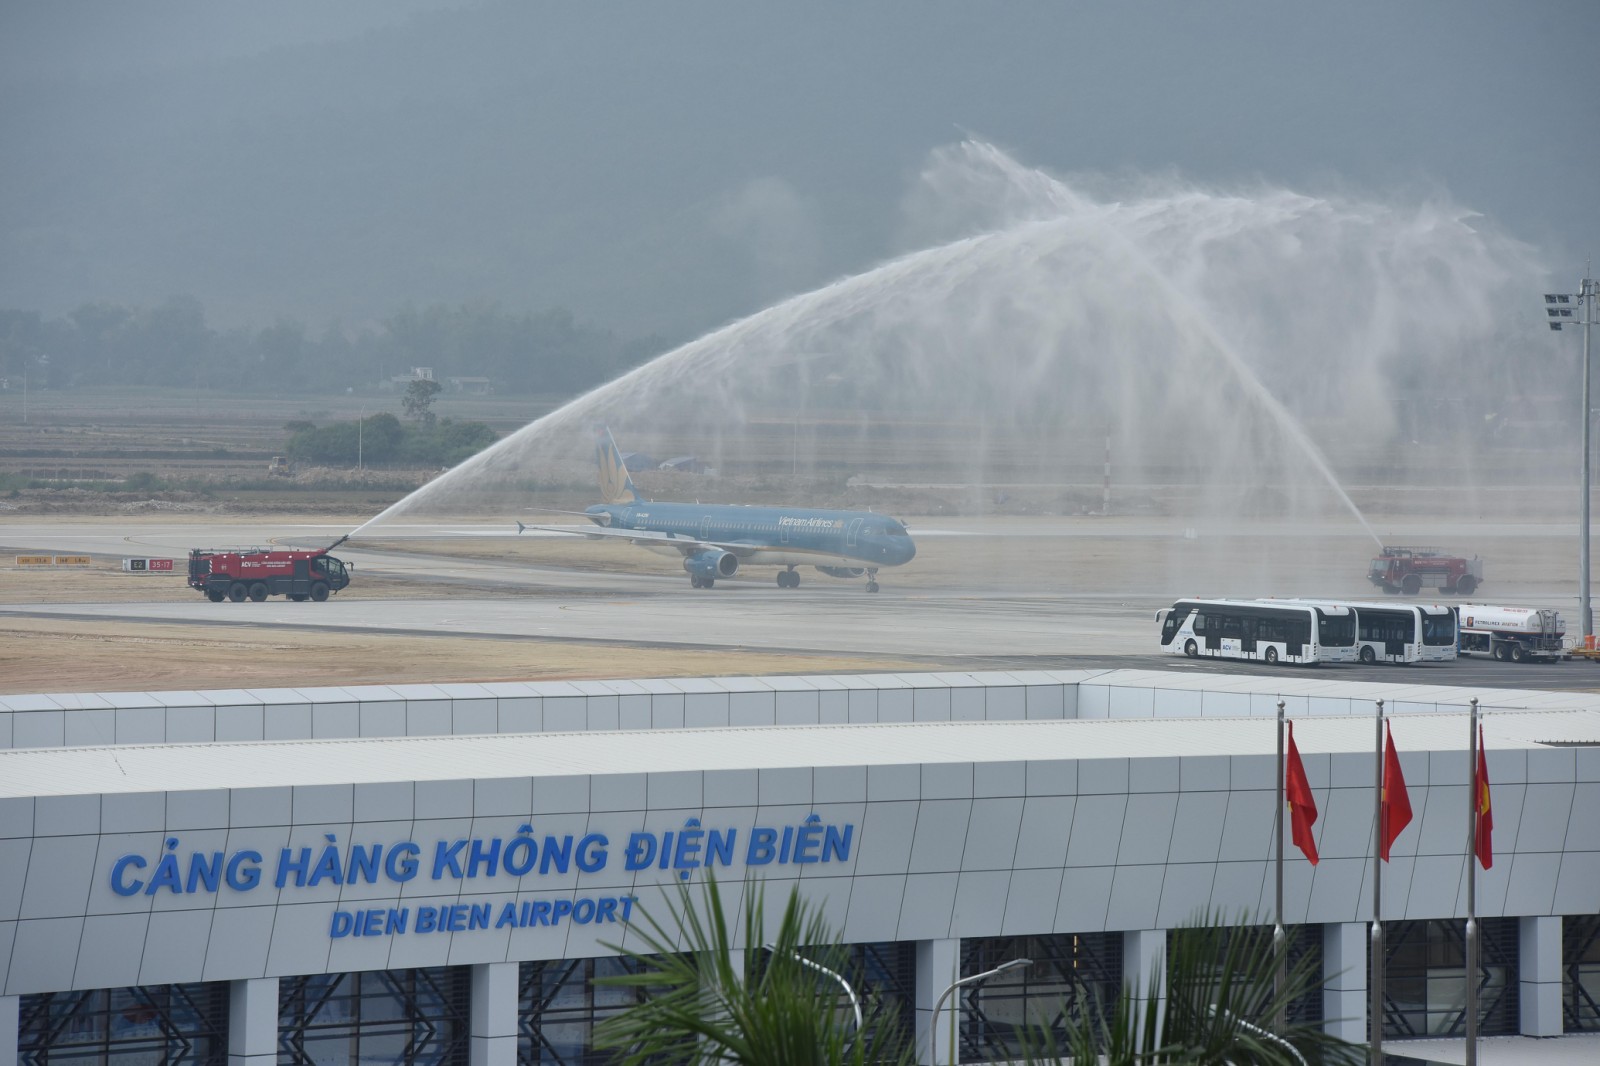 Sau thành công của chuyến bay đầu tiên này, từ ngày 02_12, Vietnam Airlines sẽ tiếp tục khai thác các chuyến bay thương mại đến, đi từ sân bay Điện Biên